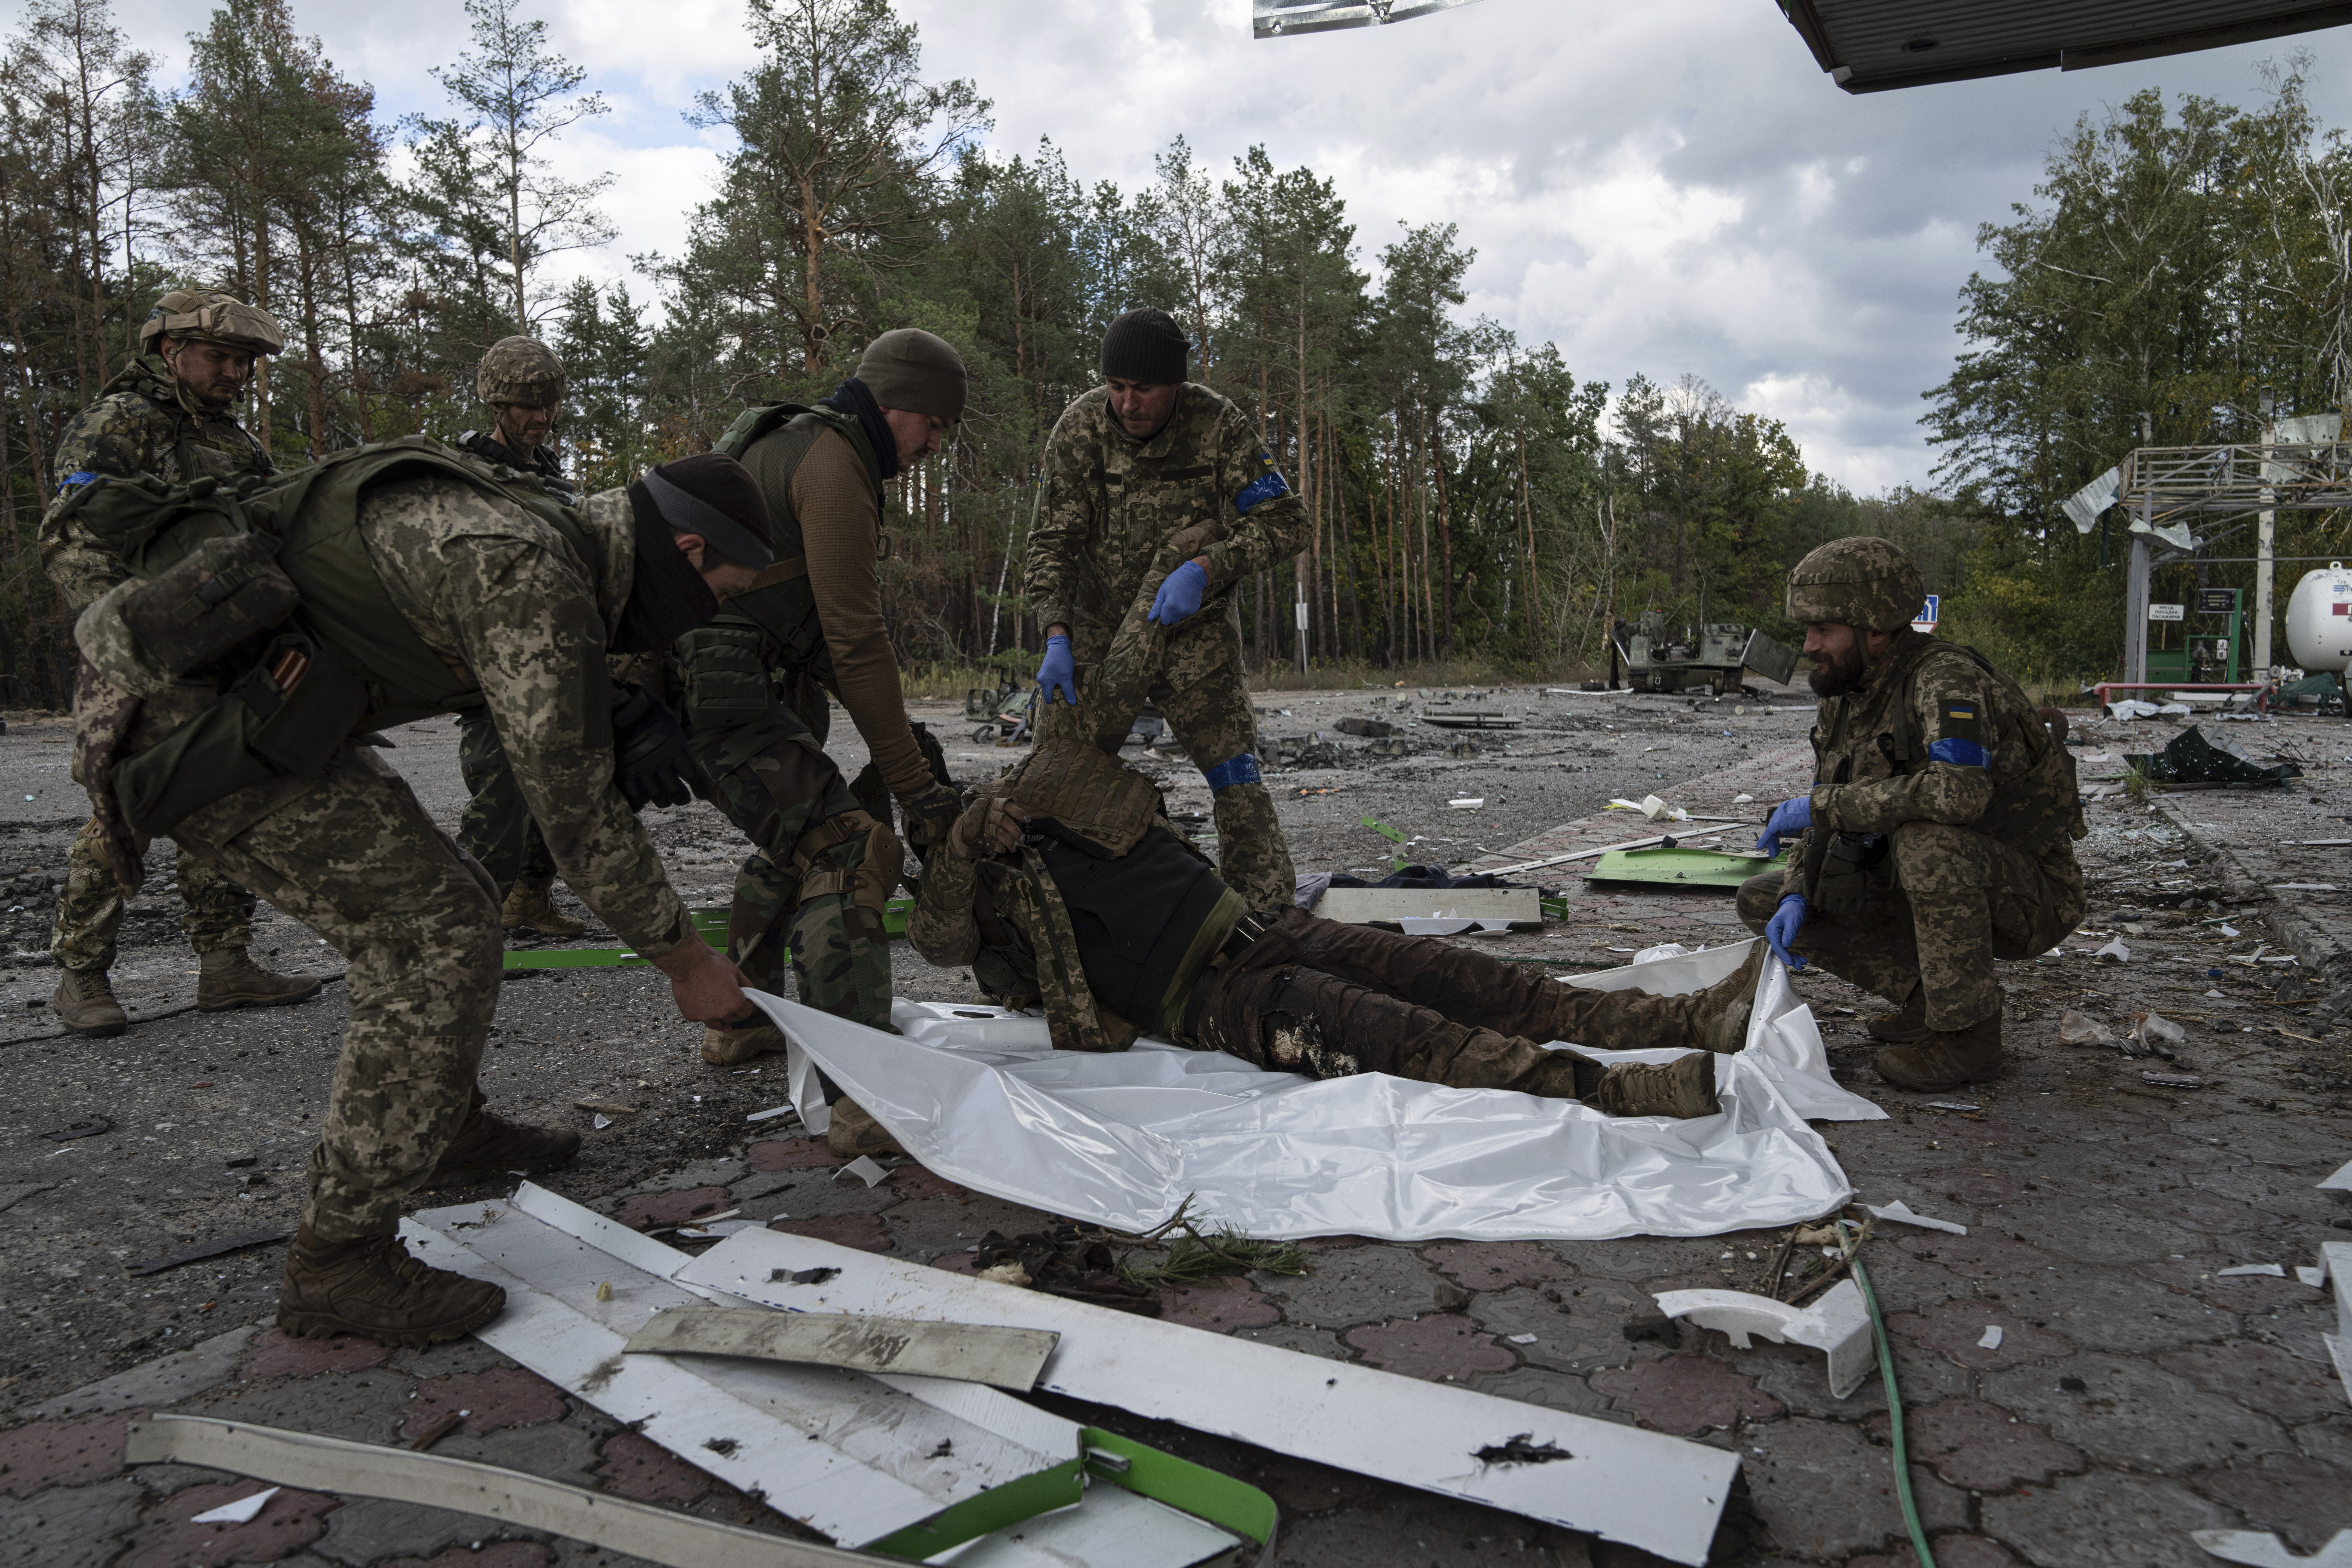 La imagen sobre el terreno puso de manifiesto el caos que enfrenta el presidente Vladimir Putin en su respuesta a los avances ucranianos (AP Photo/Evgeniy Maloletka)